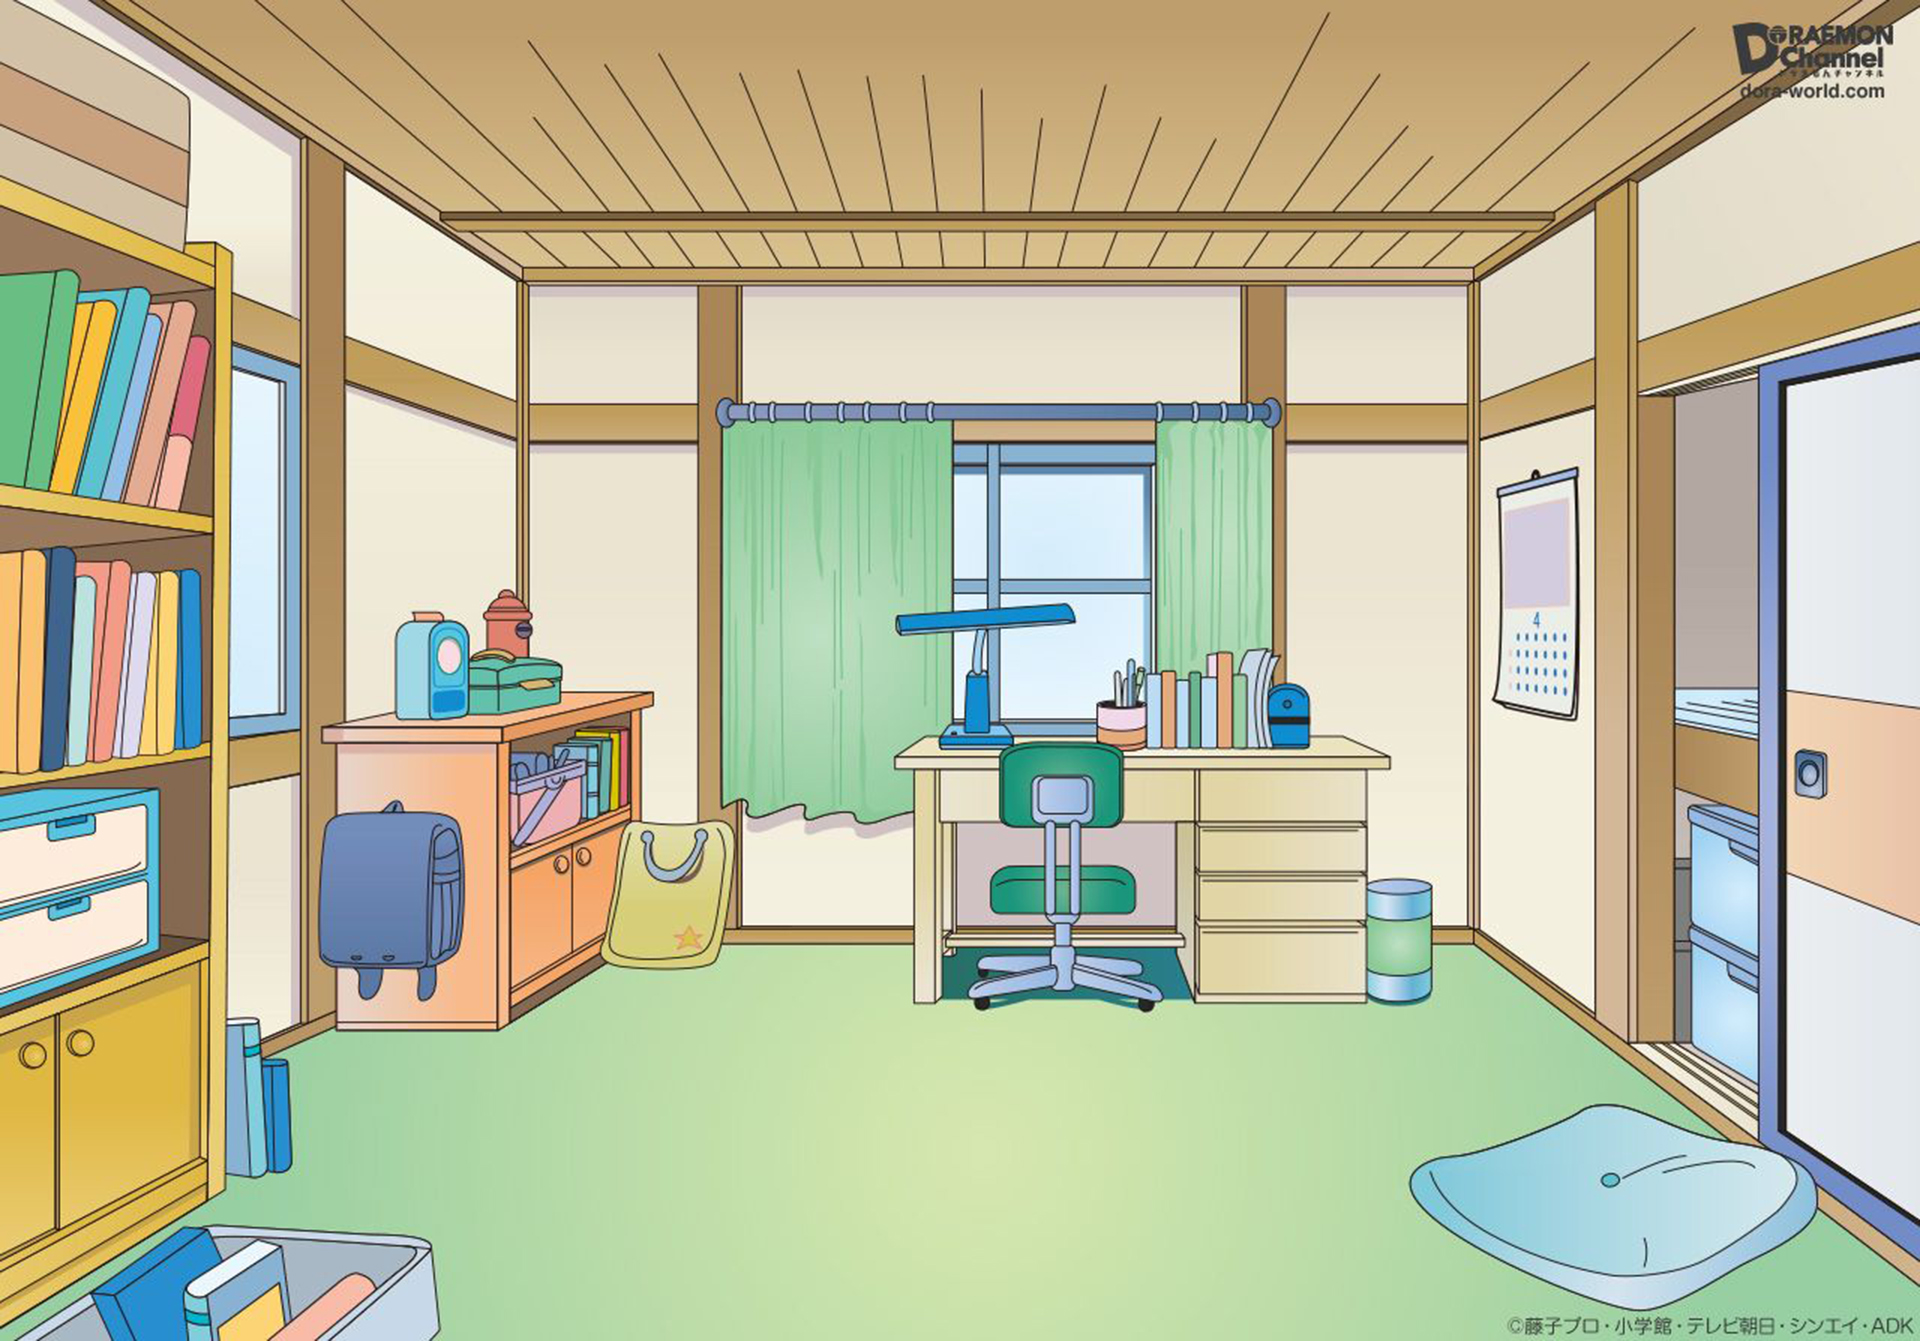 Top 10 Anime Room Ideas  Anime Room Decor